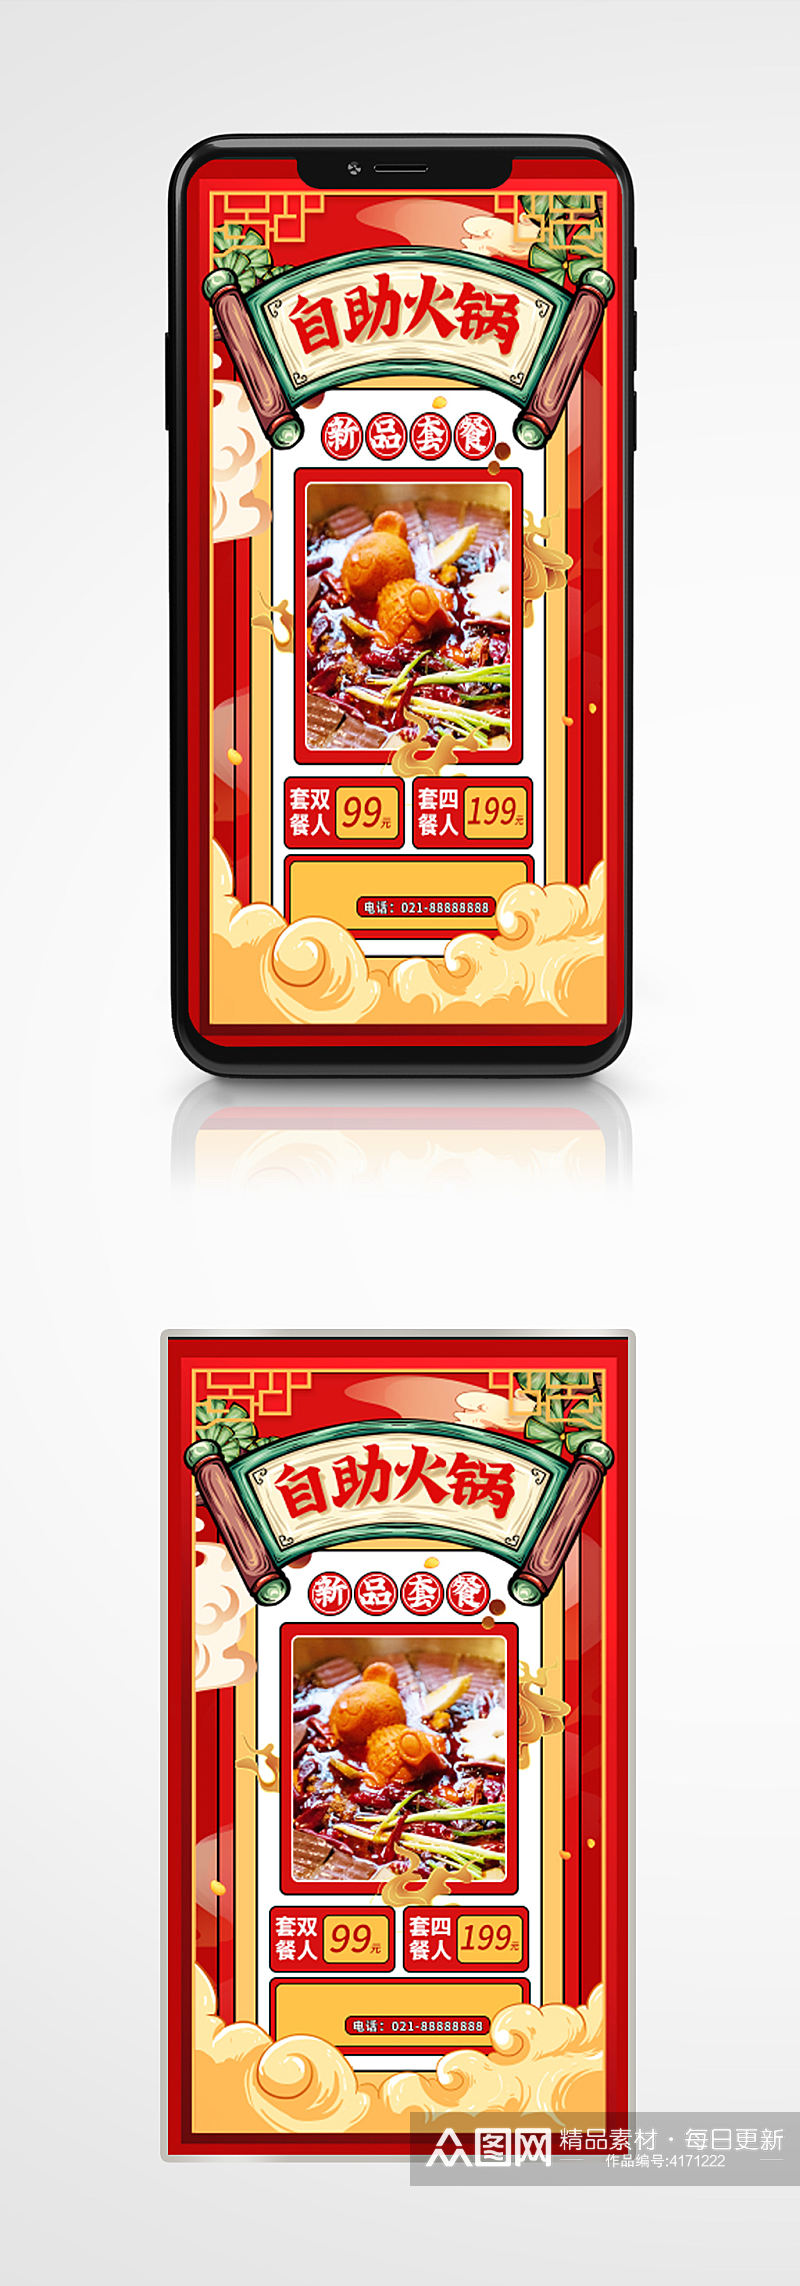 火锅自助餐活动国潮美食活动促销手机海报素材